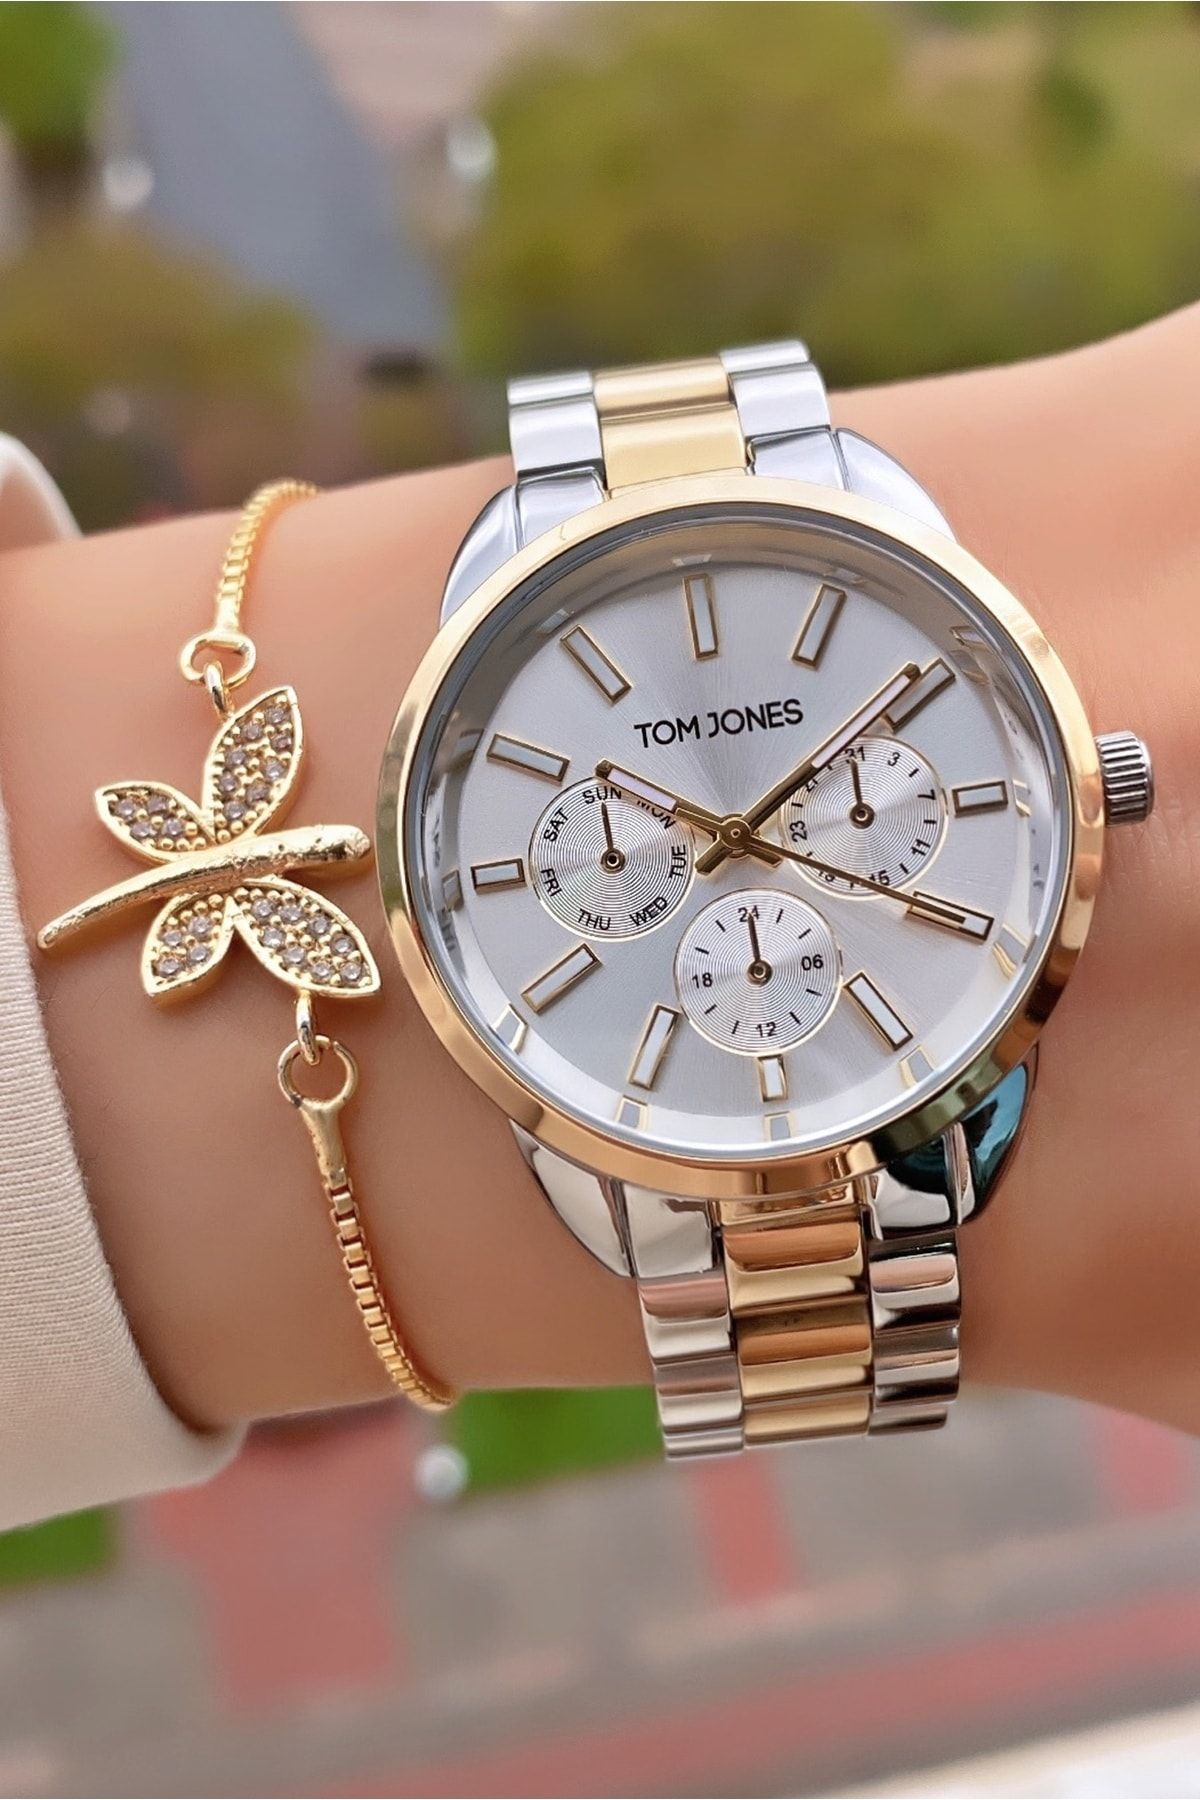 Tom Jones Marka Sarı Gümüş Renk 2 Yıl Garantili Kadın Kol Saati - Bileklik